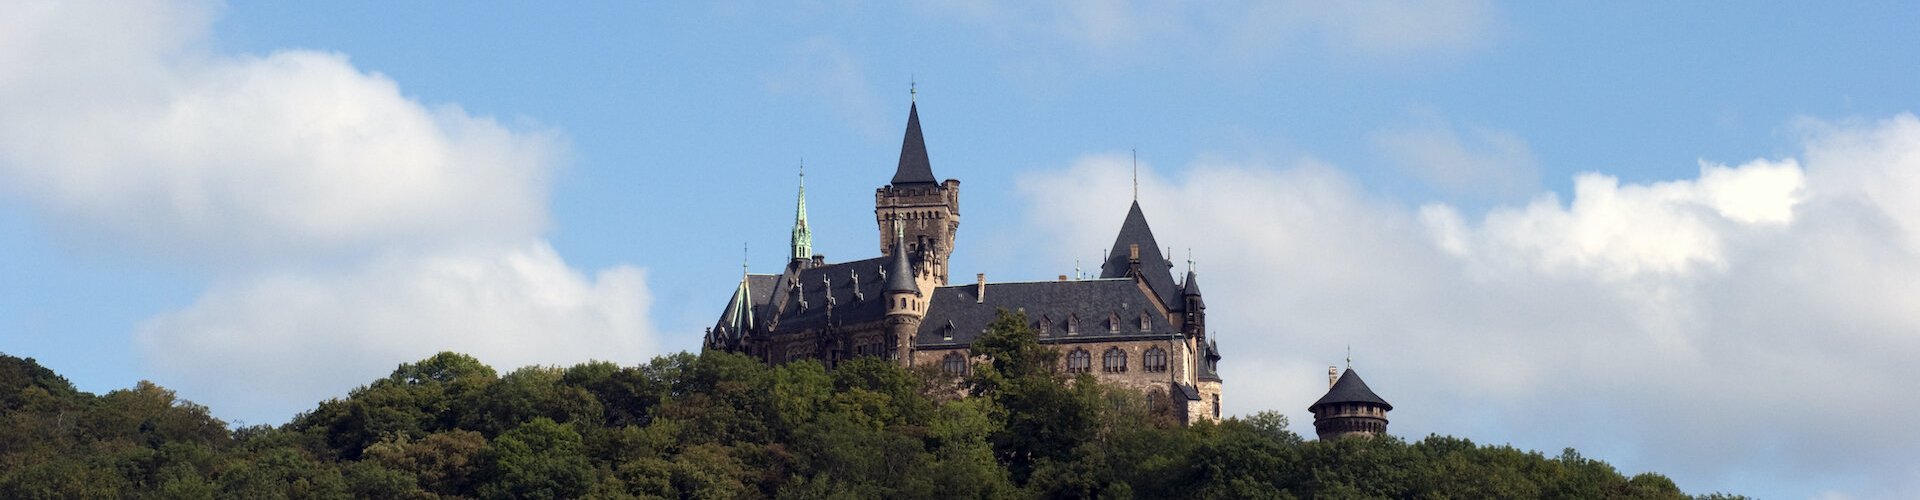 Ausflugsziel Schloss Wernigerode